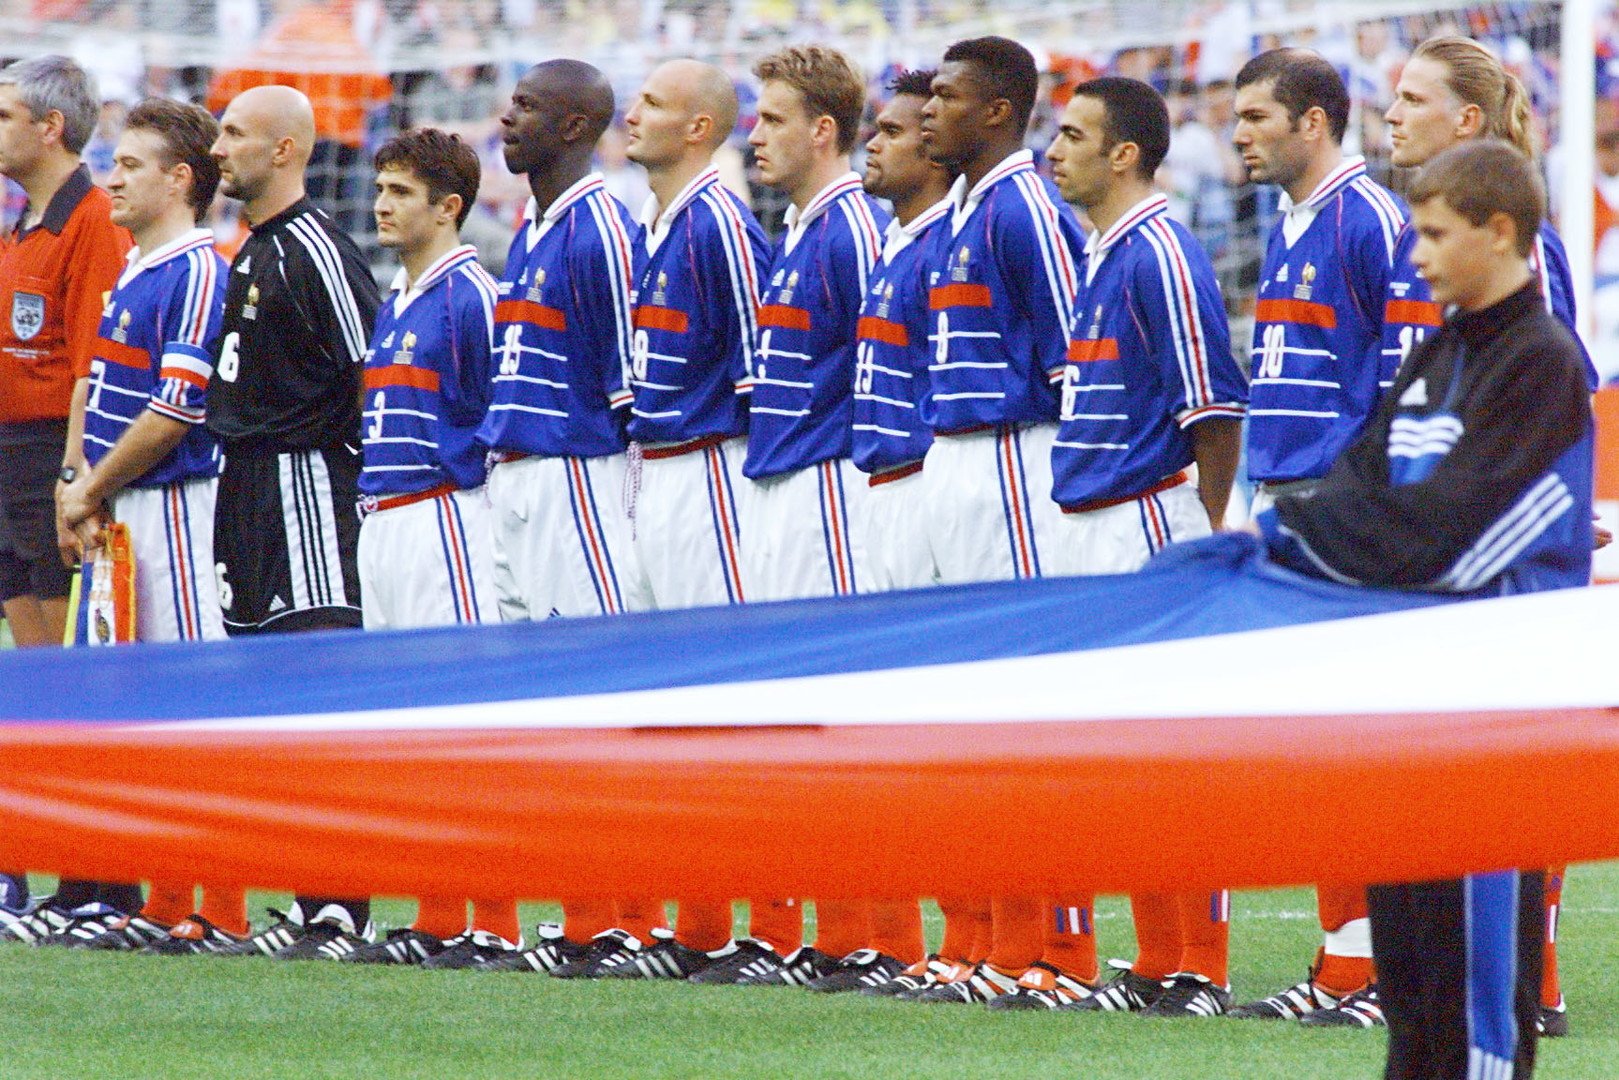 فرنسا تلاقي البرازيل في نسخة معادة من نهائي مونديال 98